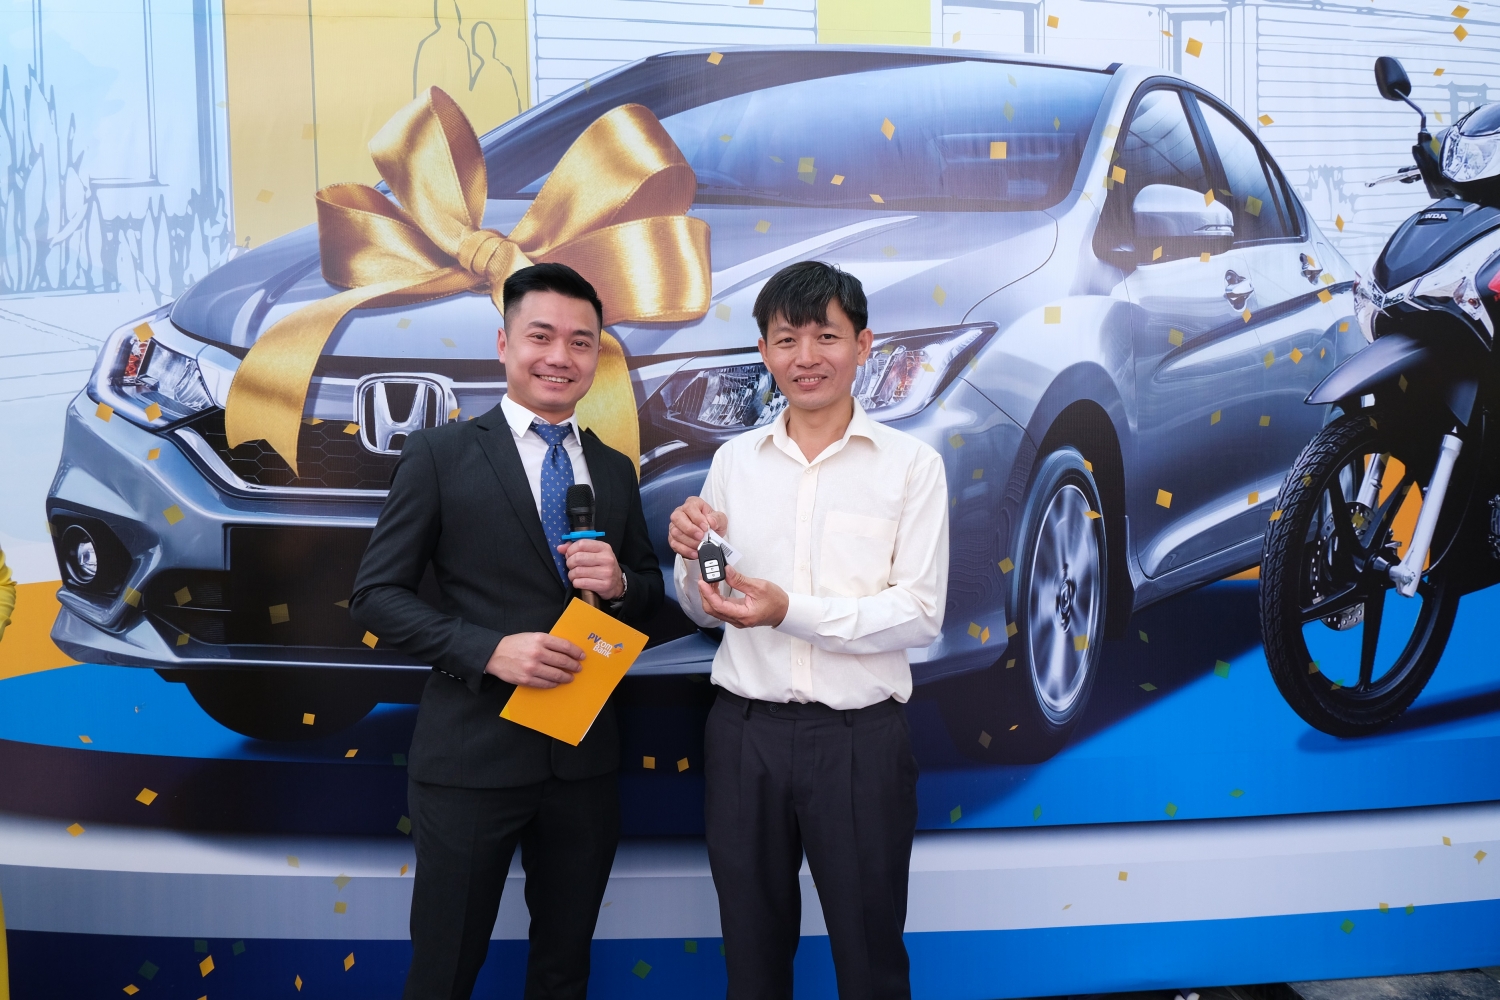 pvcombank trao tang xe o to honda city cho khach hang trung thuong chuong trinh khuyen mai he 2019